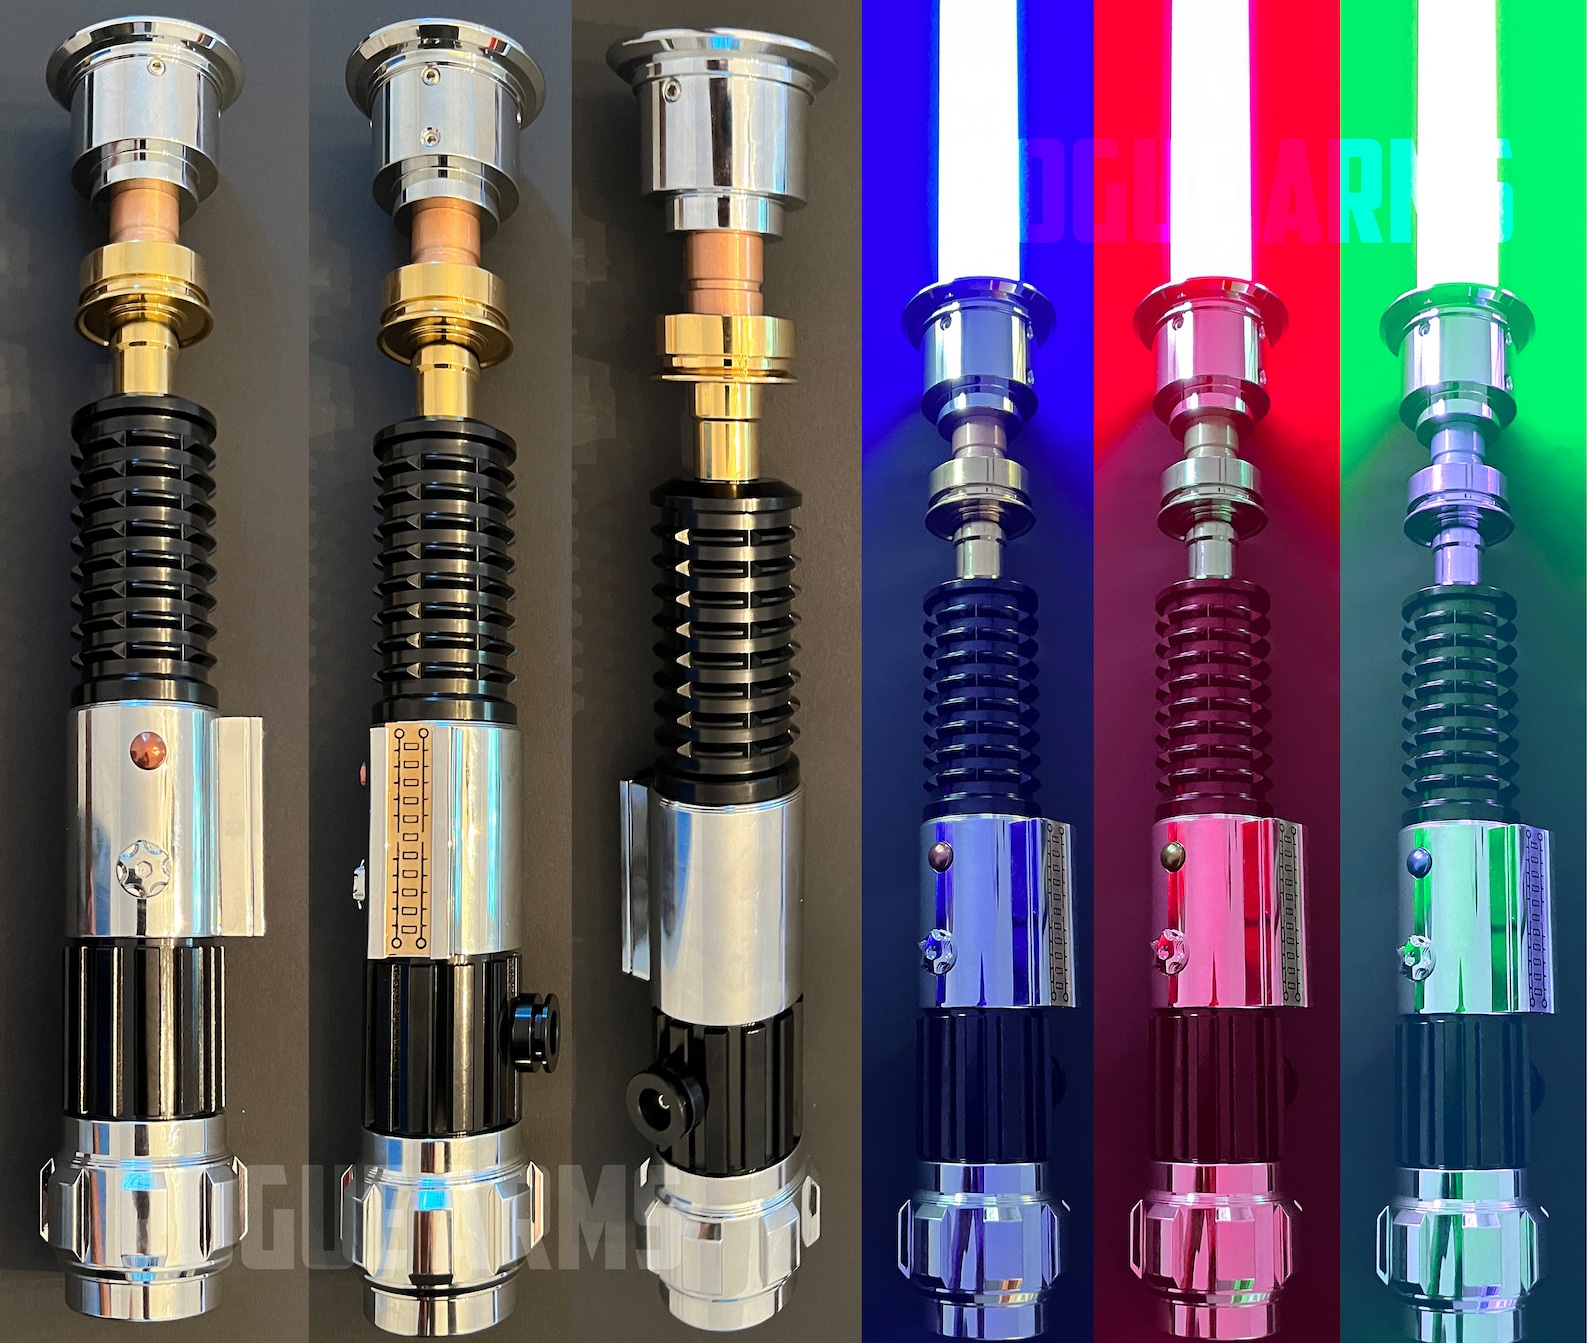 SW Obi-Wan Kenobi Aluminum Force FX Lightsaber 2